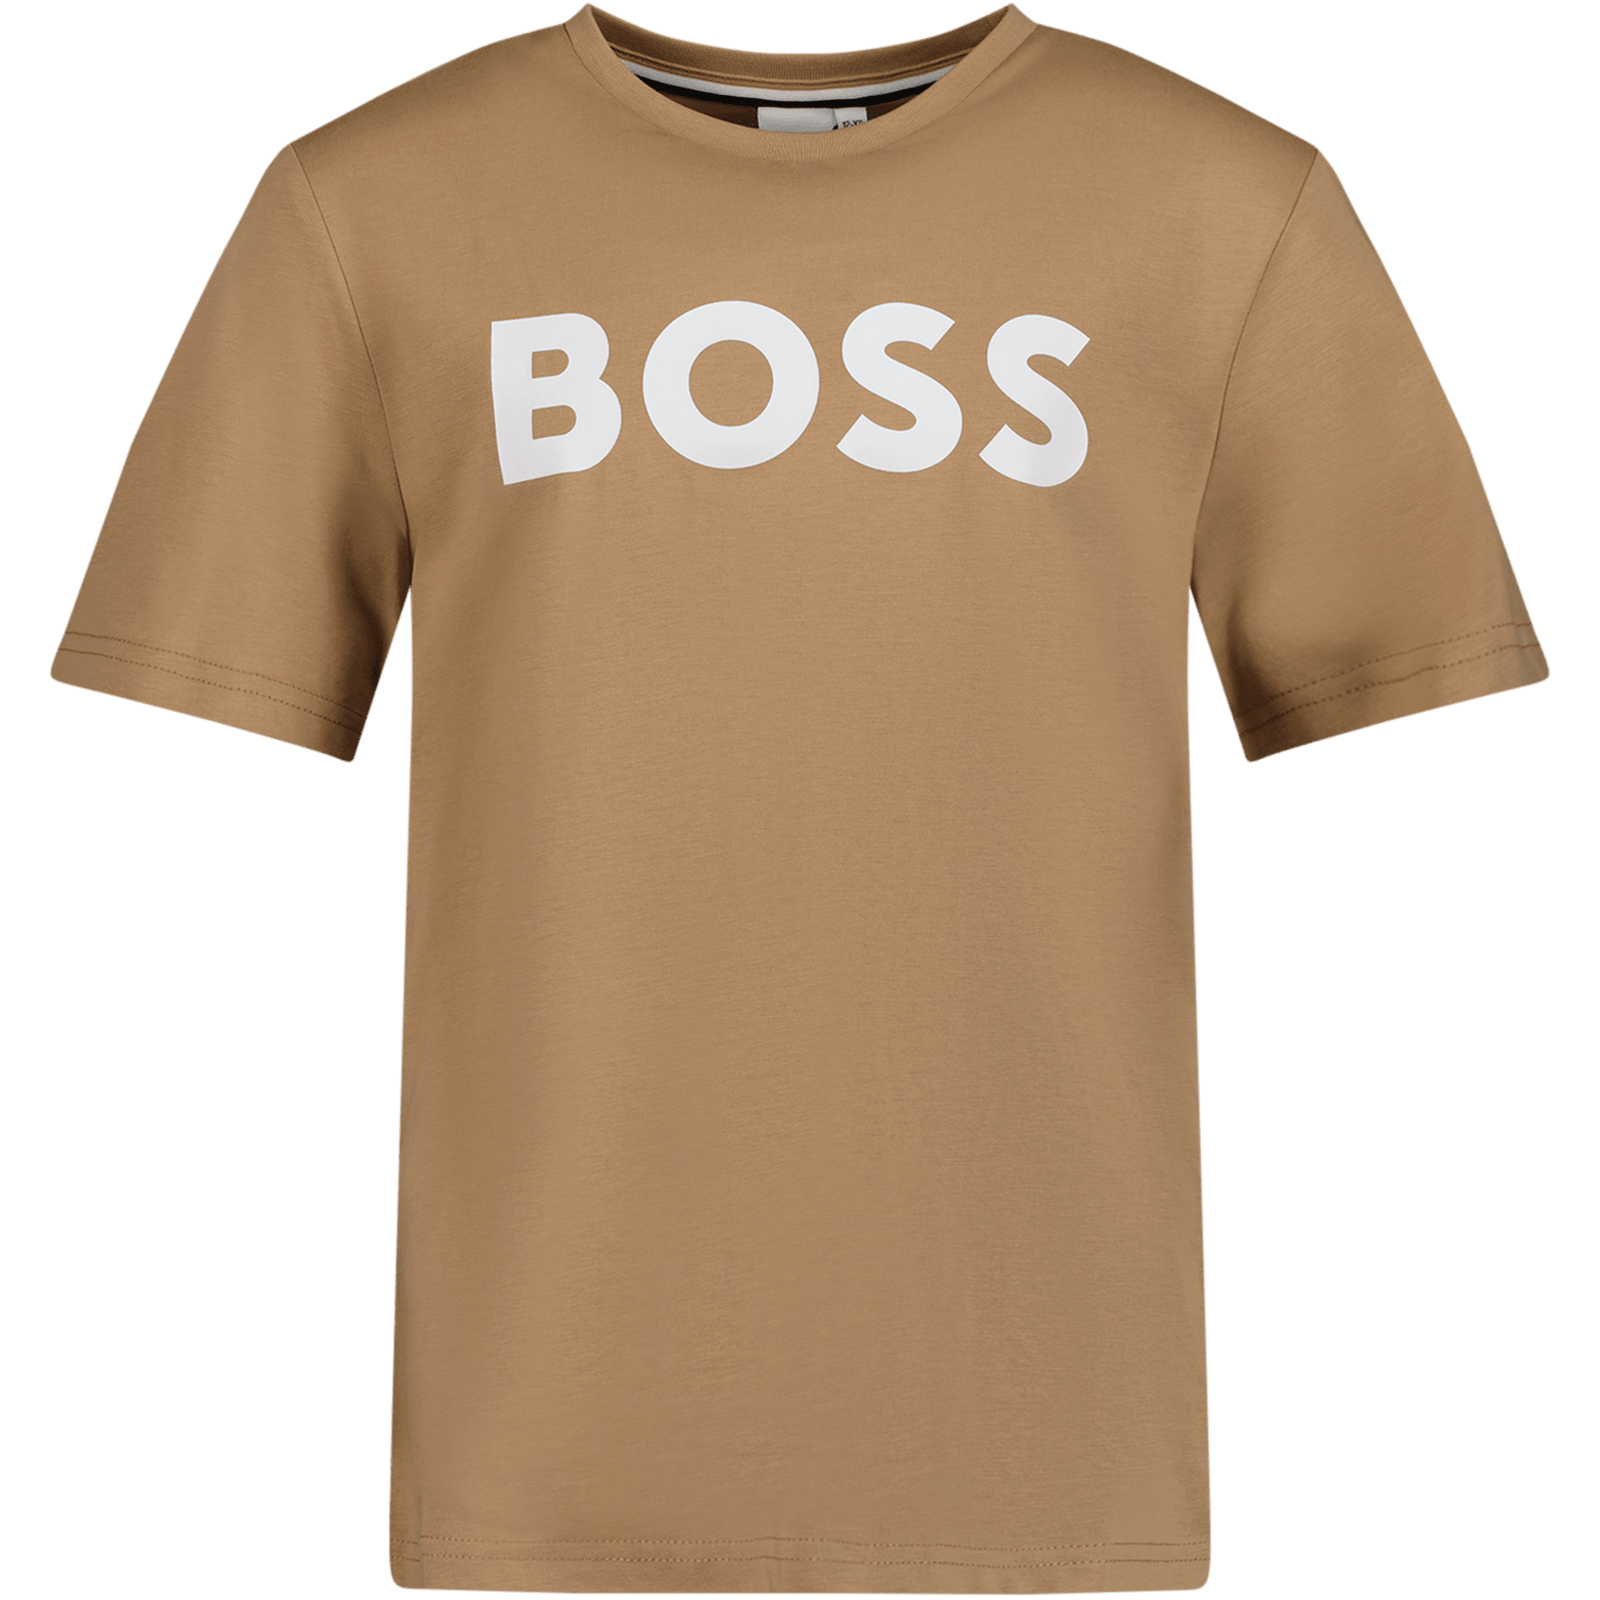 Boss Kinder Jongens T-Shirt Beige 4Y